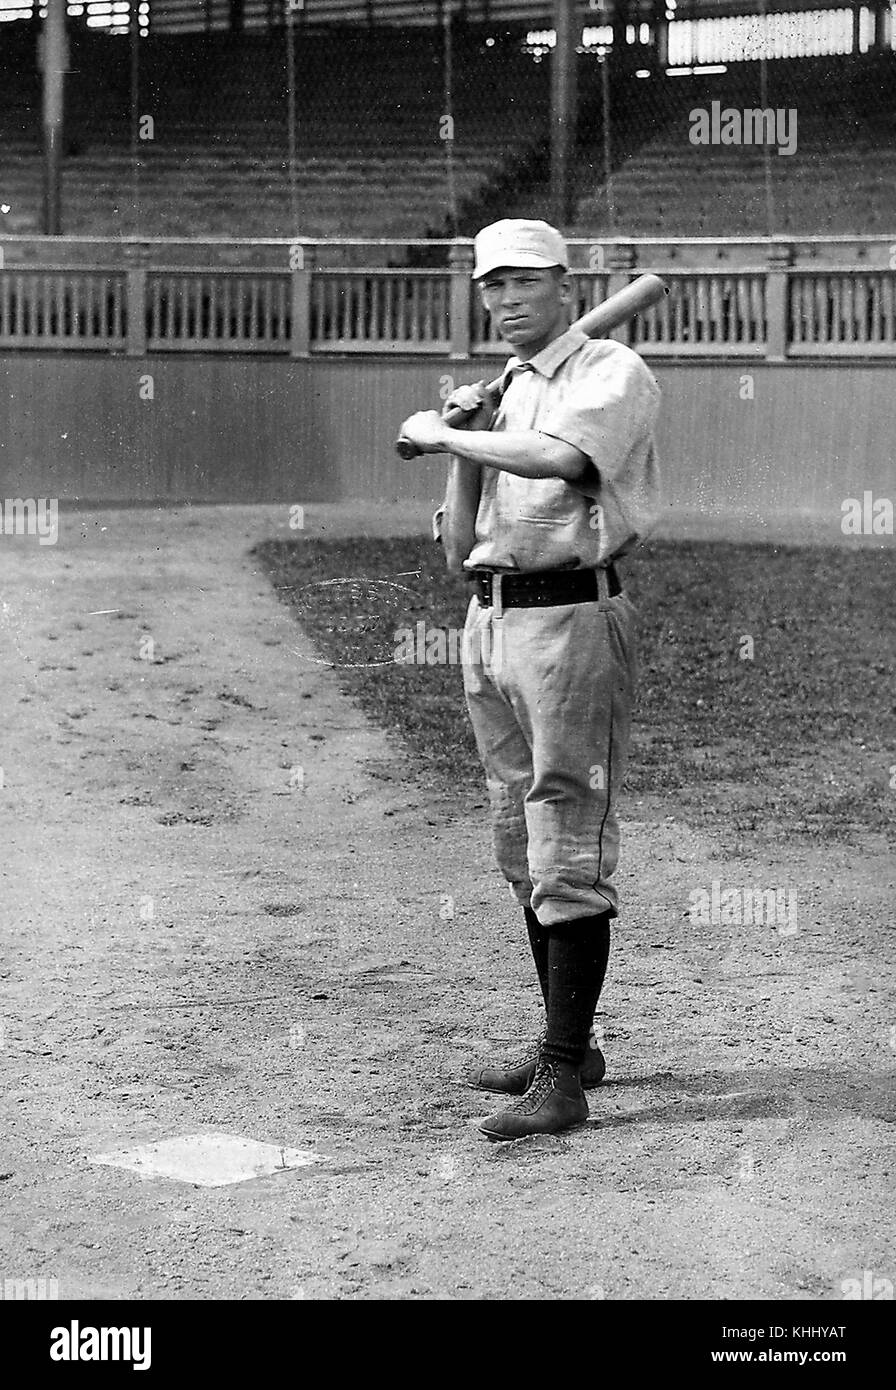 Portrait complet de Denny Lyons, il porte un uniforme de baseball et tient une batte, il a joué pour cinq équipes dans la Major League Baseball Association pendant ses douze années de carrière, 1900. De la bibliothèque publique de New York. Banque D'Images